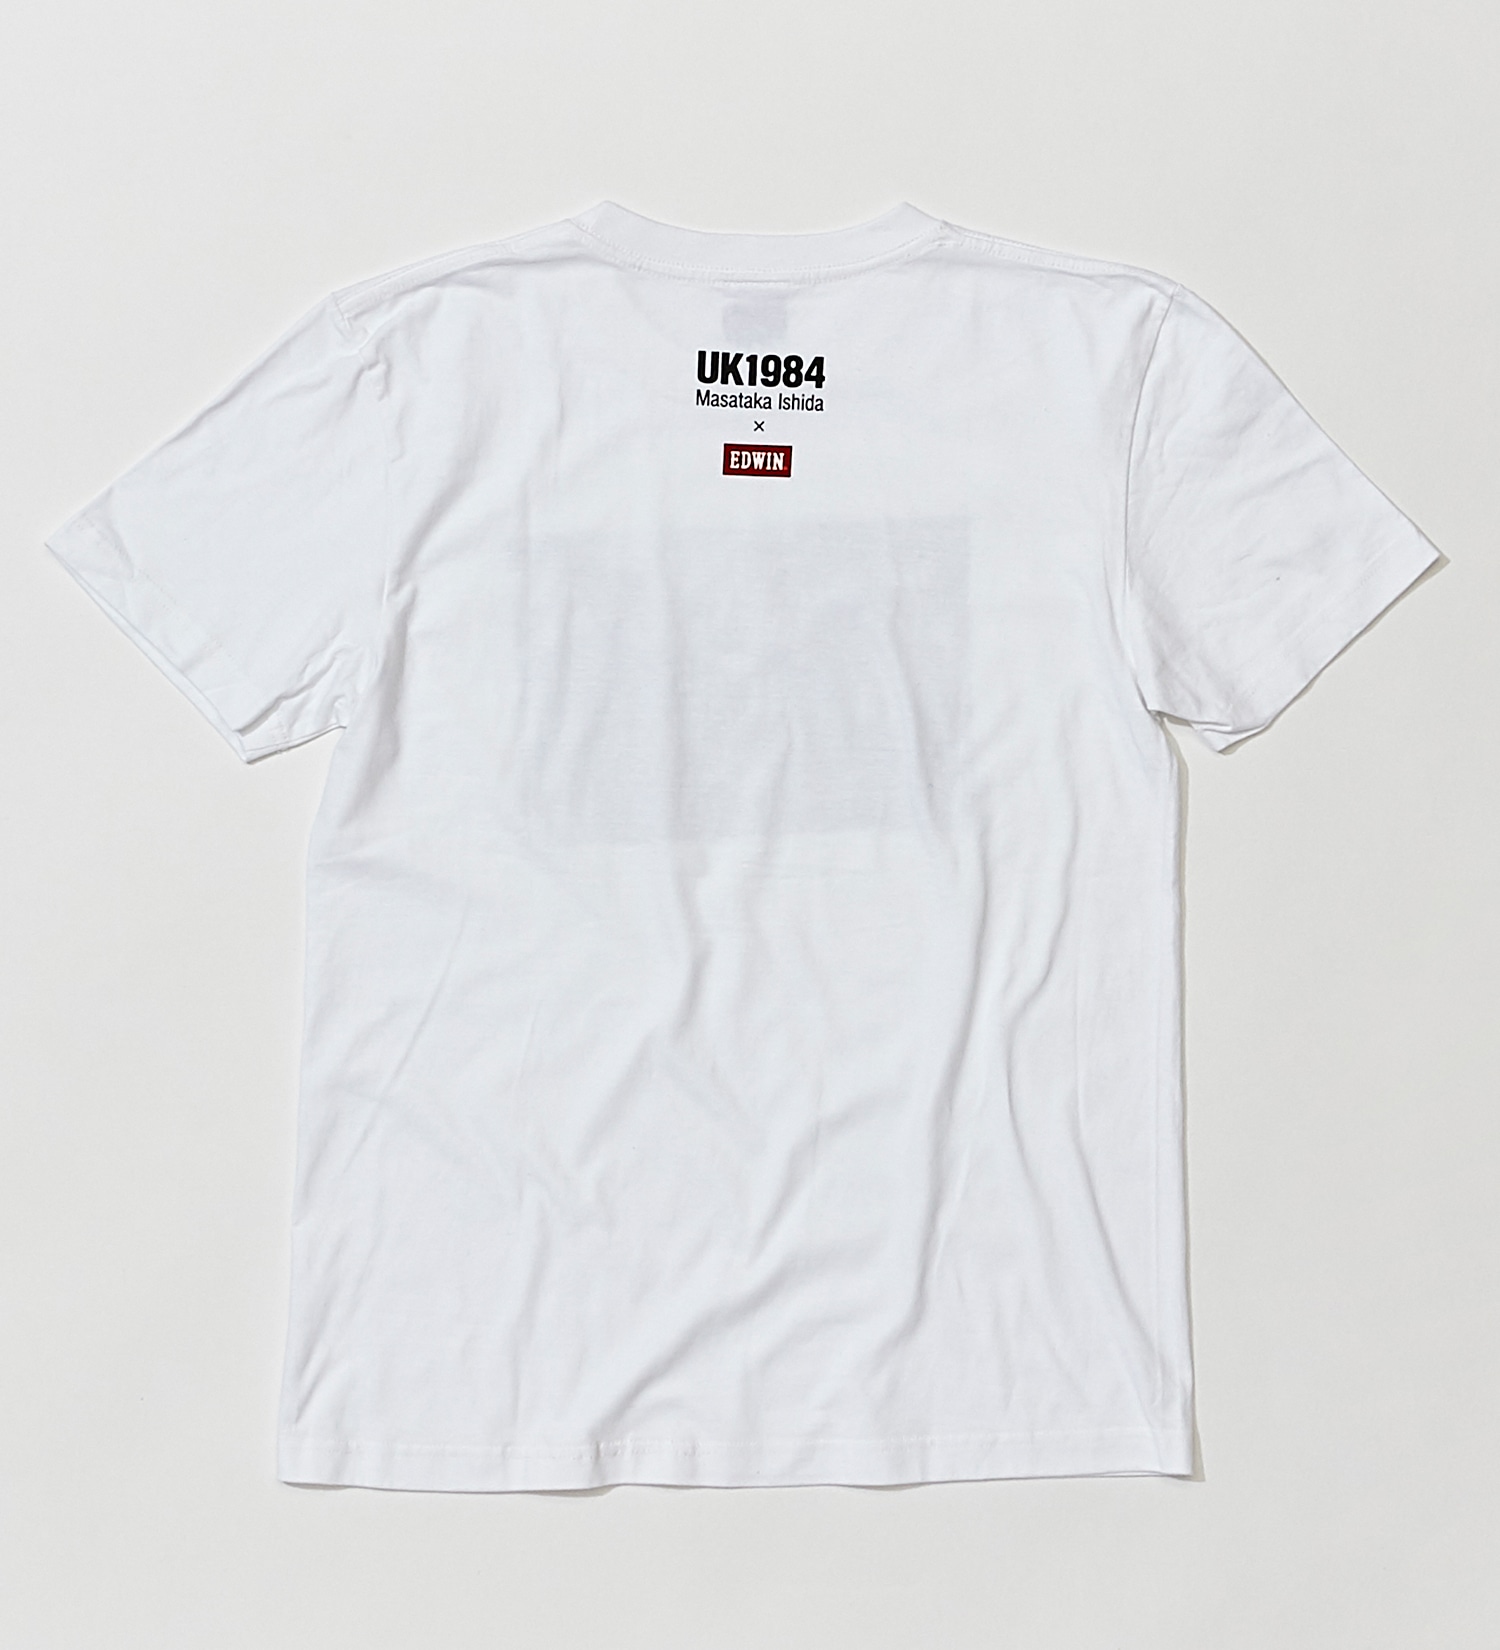 EDWIN(エドウイン)の【公式EC限定】EDWIN × MASATAKA ISHIDA フォト Tシャツ|トップス/Tシャツ/カットソー/メンズ|ホワイト2